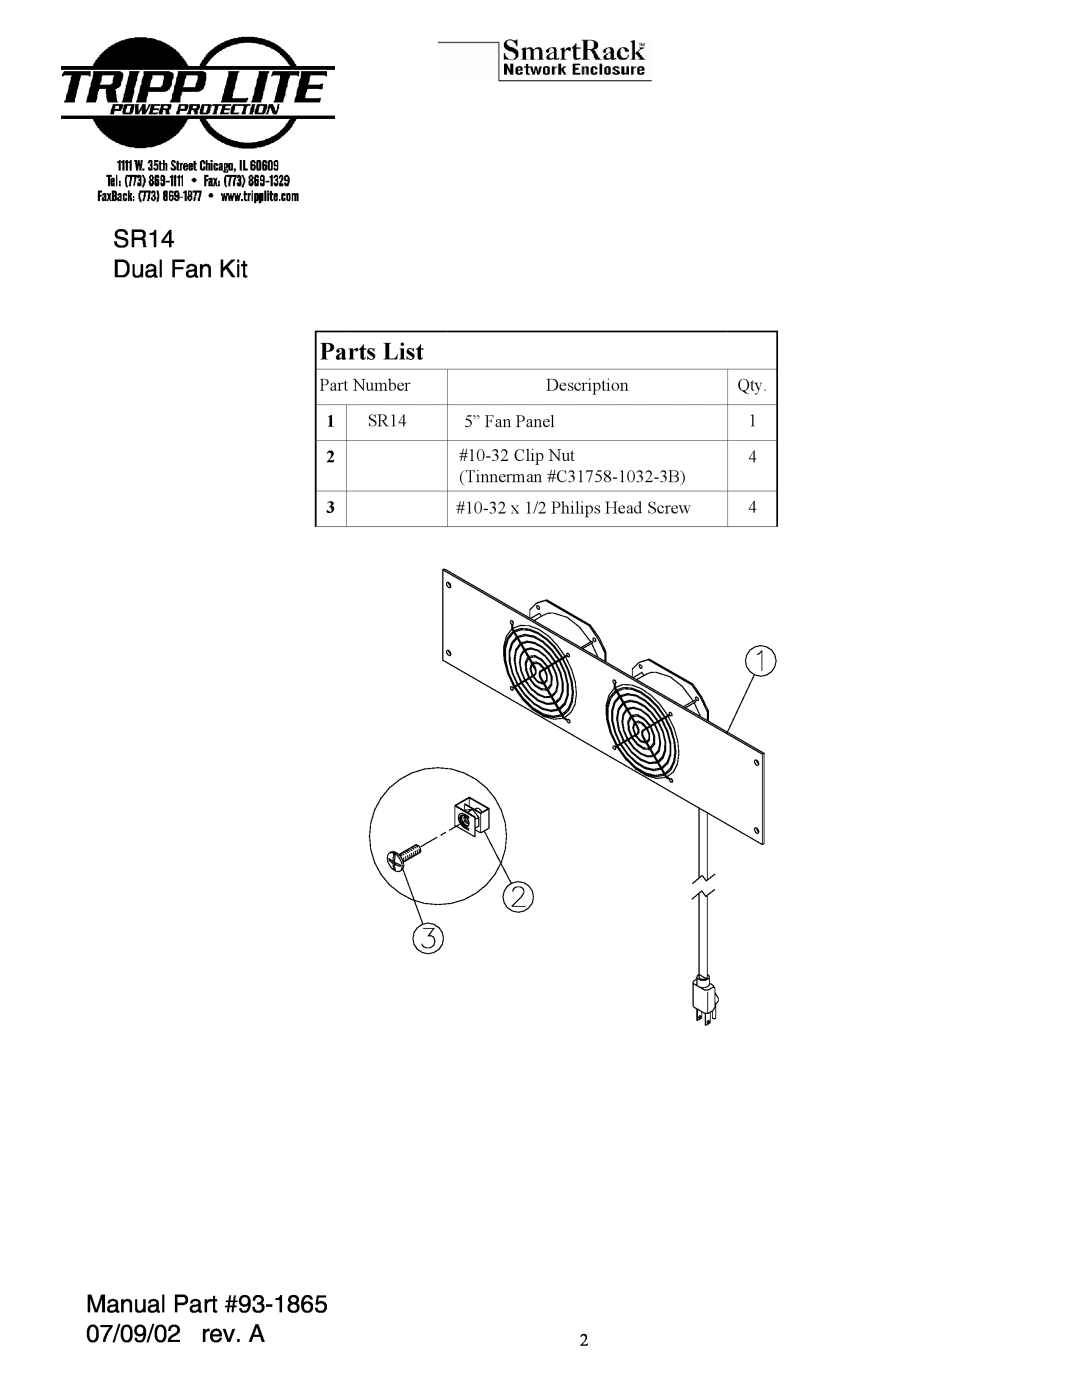 Tripp Lite MKH 800 P 48 manual SR14 Dual Fan Kit, Parts List, Manual, 07/09/02 rev. A 